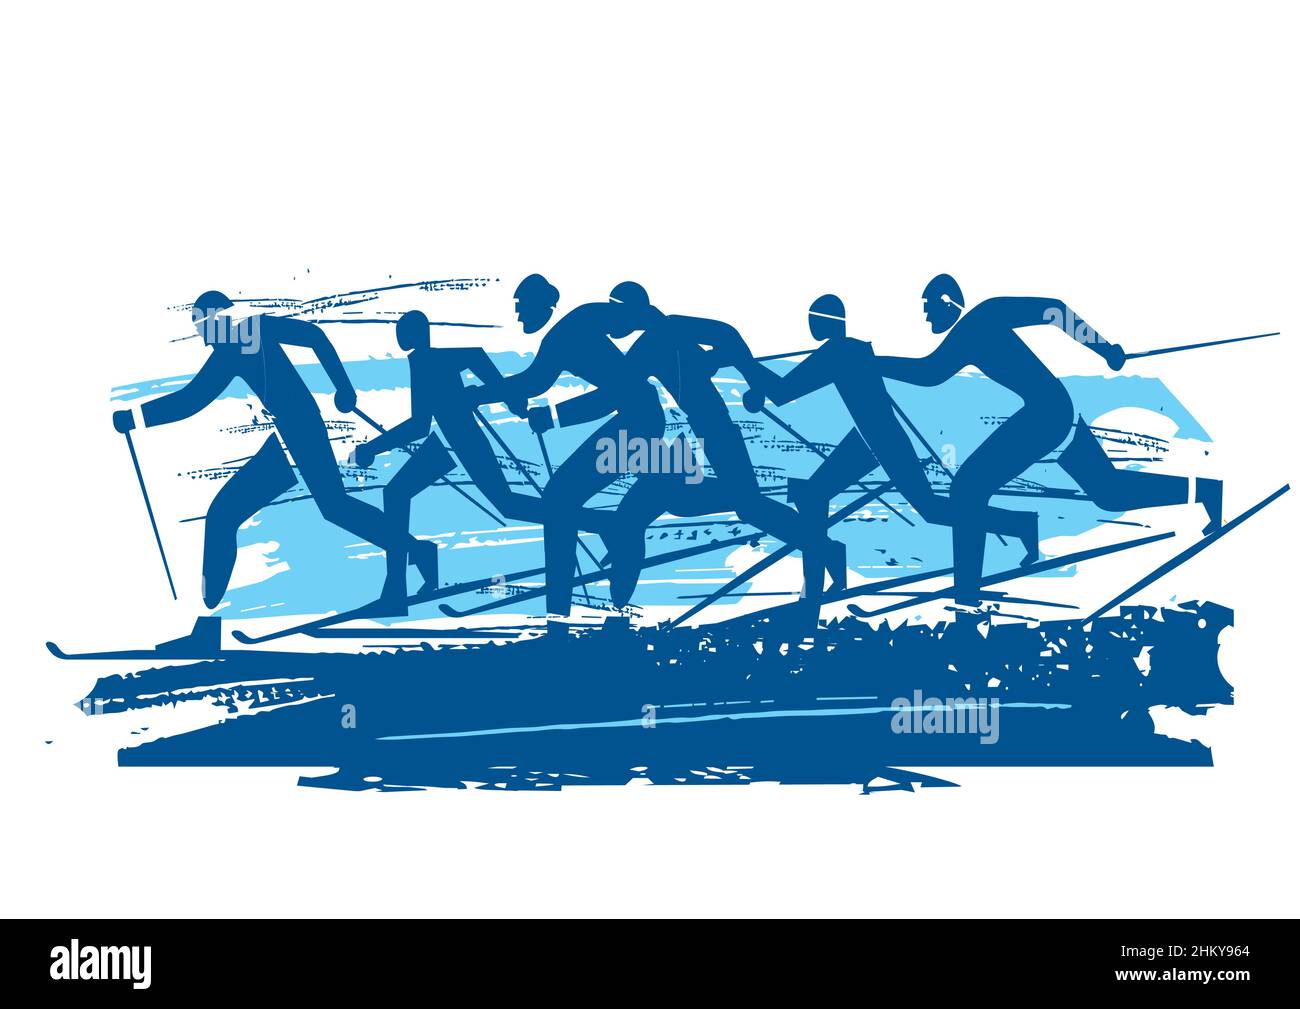 Gara di sci di fondo. Illustrazione blu espressiva dei concorrenti dello sci nordico. Vettore disponibile. Illustrazione Vettoriale